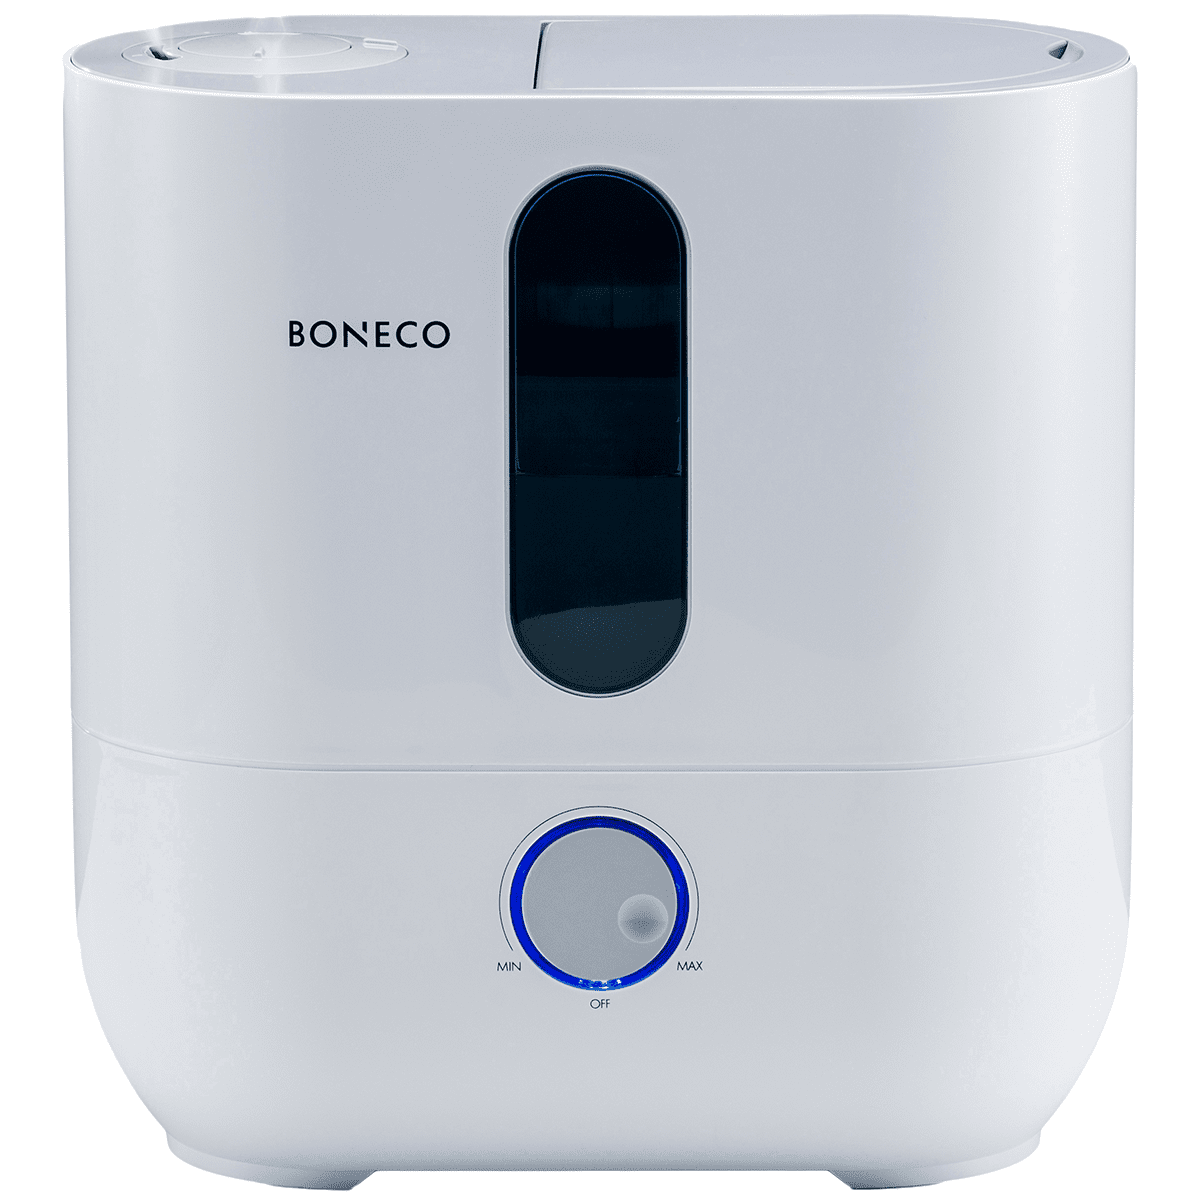 Boneco U300 Ultrasonic Humidifier